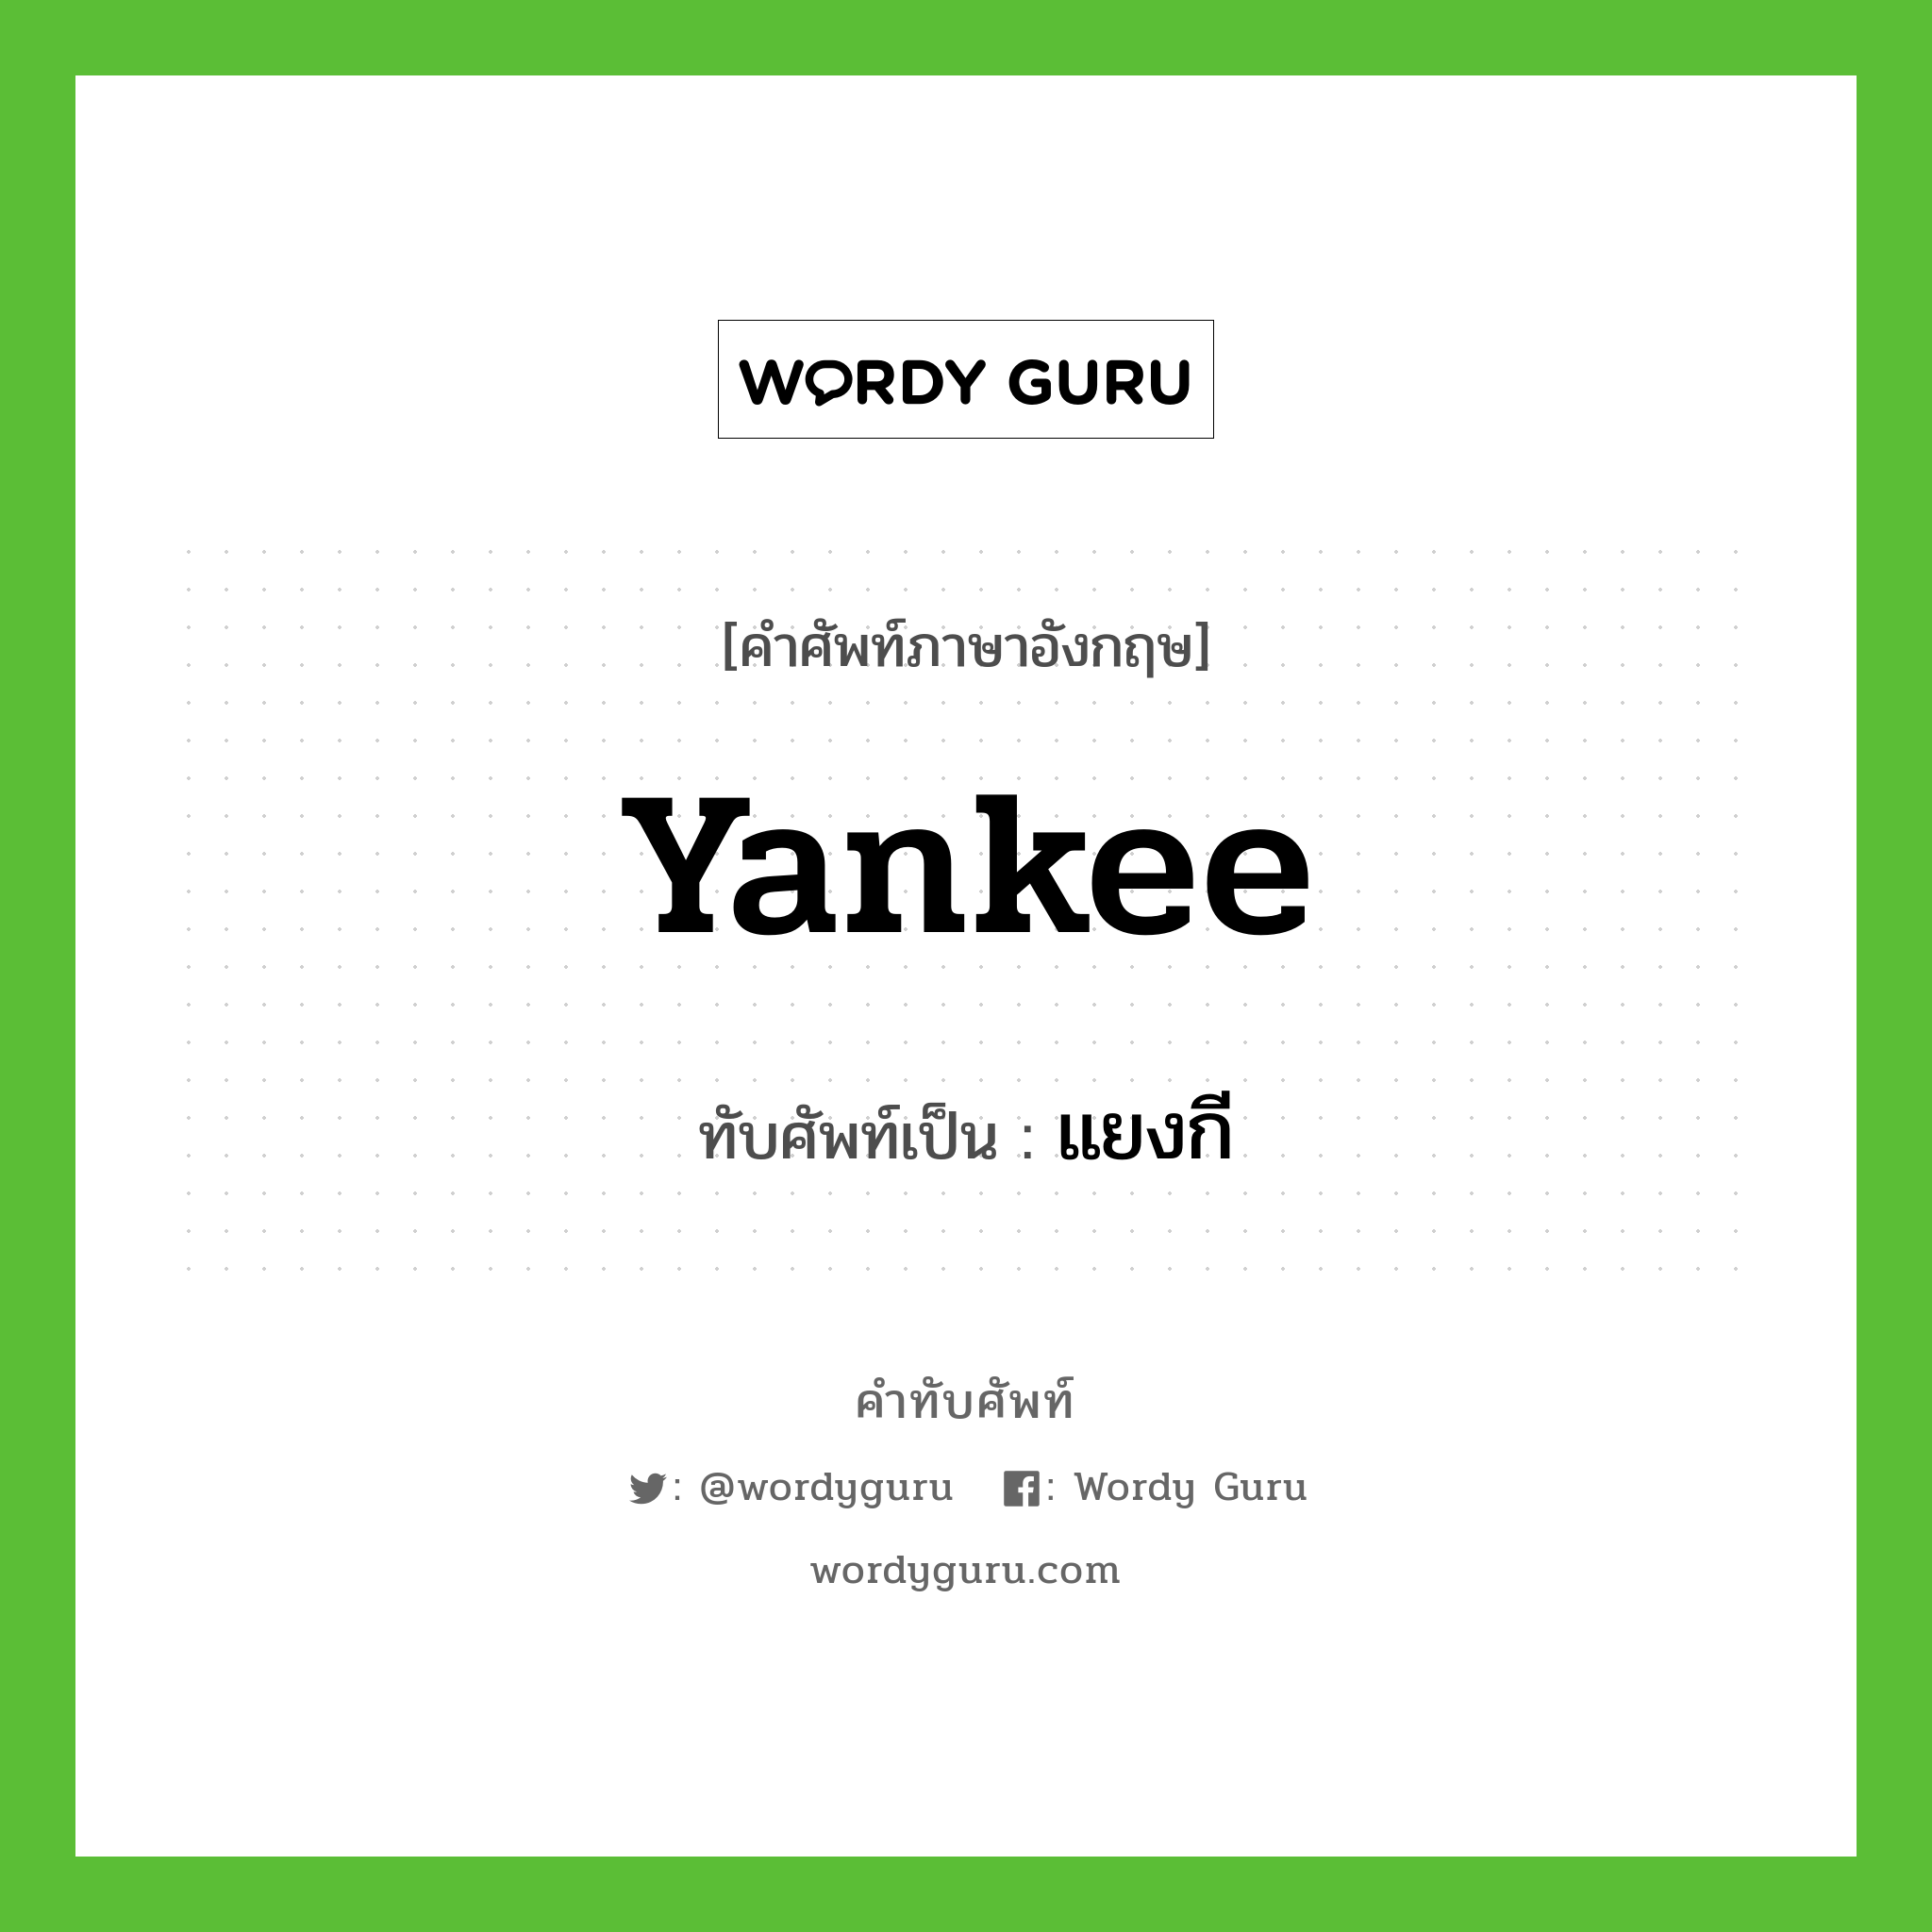 Yankee เขียนเป็นคำไทยว่าอะไร?, คำศัพท์ภาษาอังกฤษ Yankee ทับศัพท์เป็น แยงกี